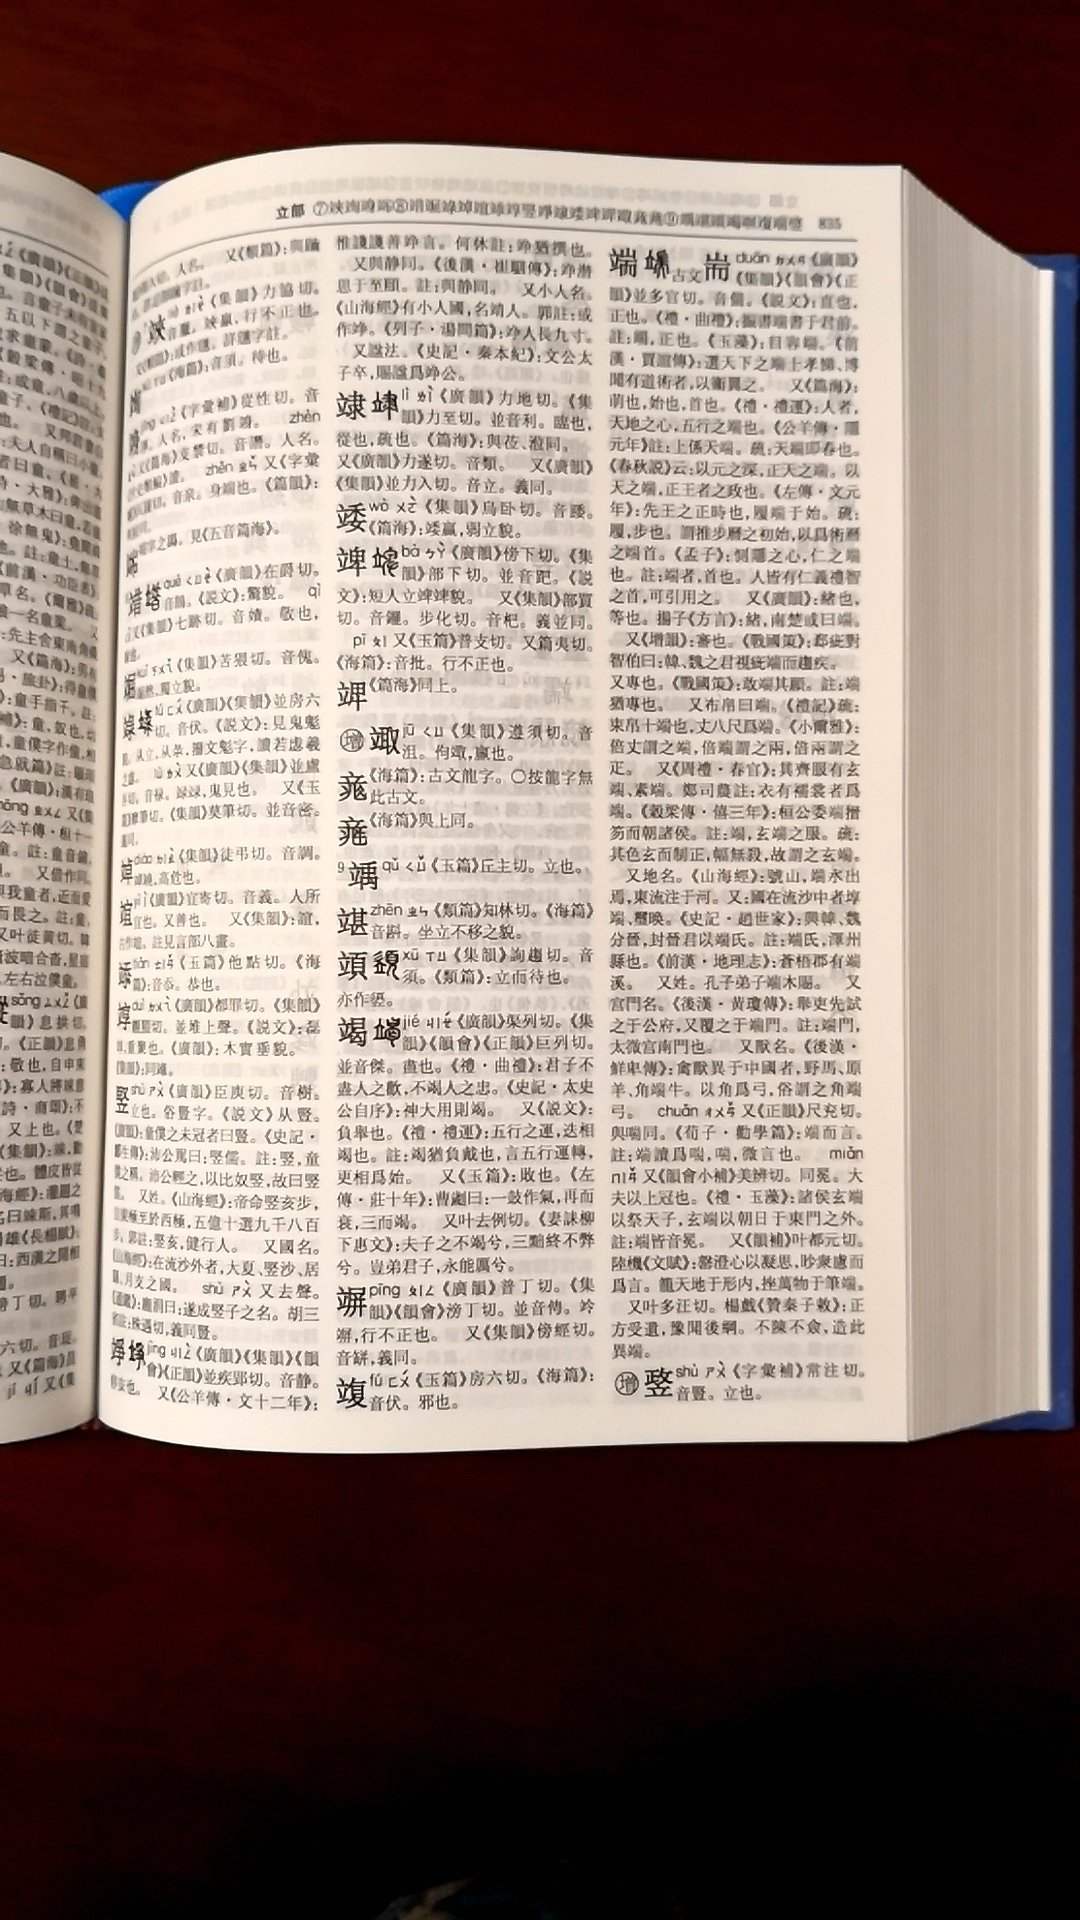 国内很权威的一本书标点整理版《康熙字典》，与影印版相比，加注现代标点、拼音、注音符号，繁体横排，并附带四角号码索引，是一本体例完善、方便实用的汉字工具书